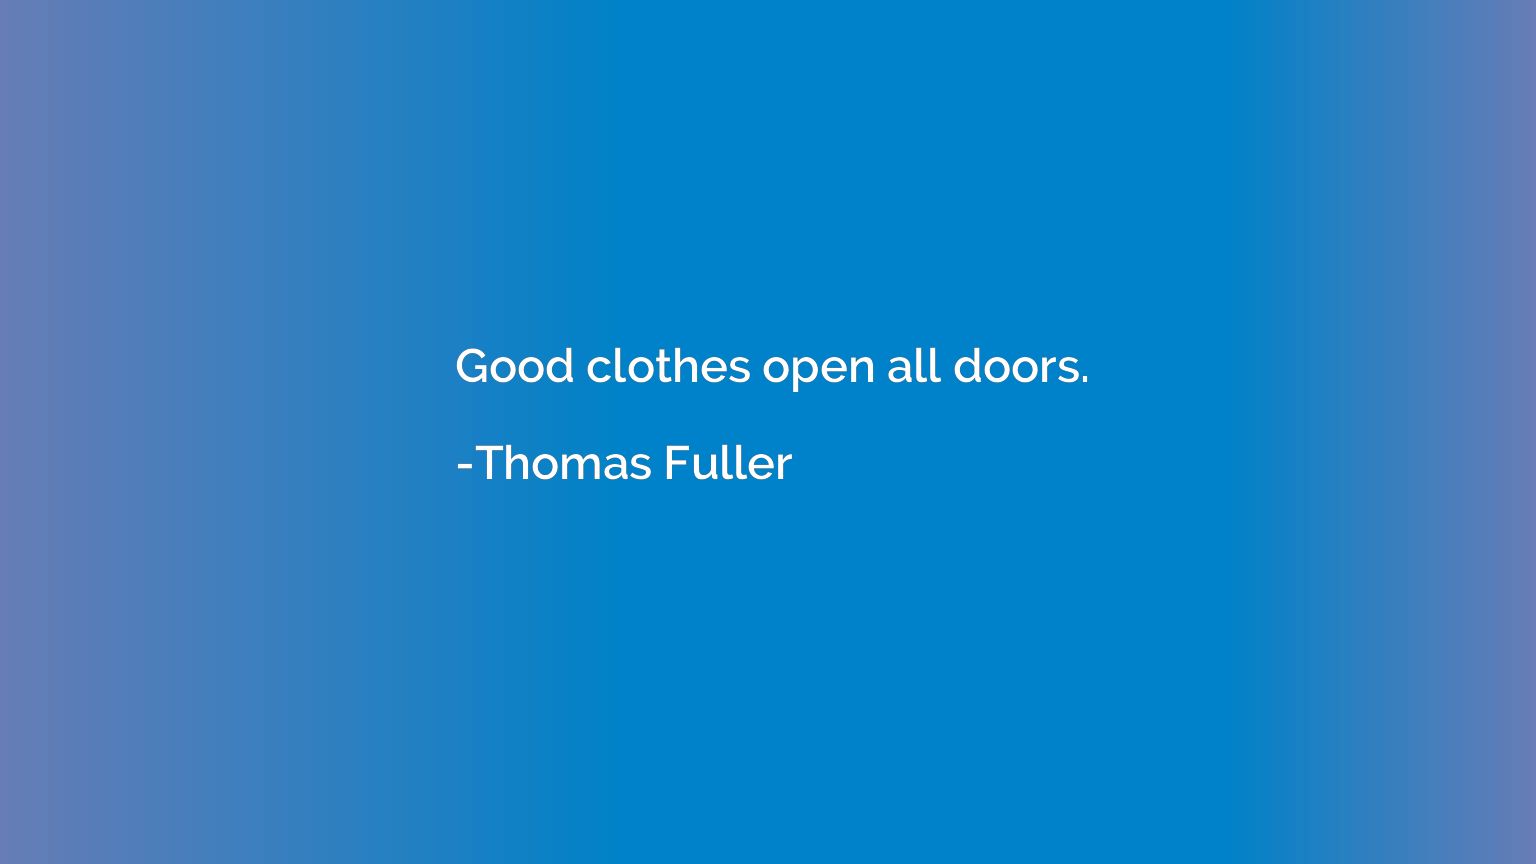 Good clothes open all doors.